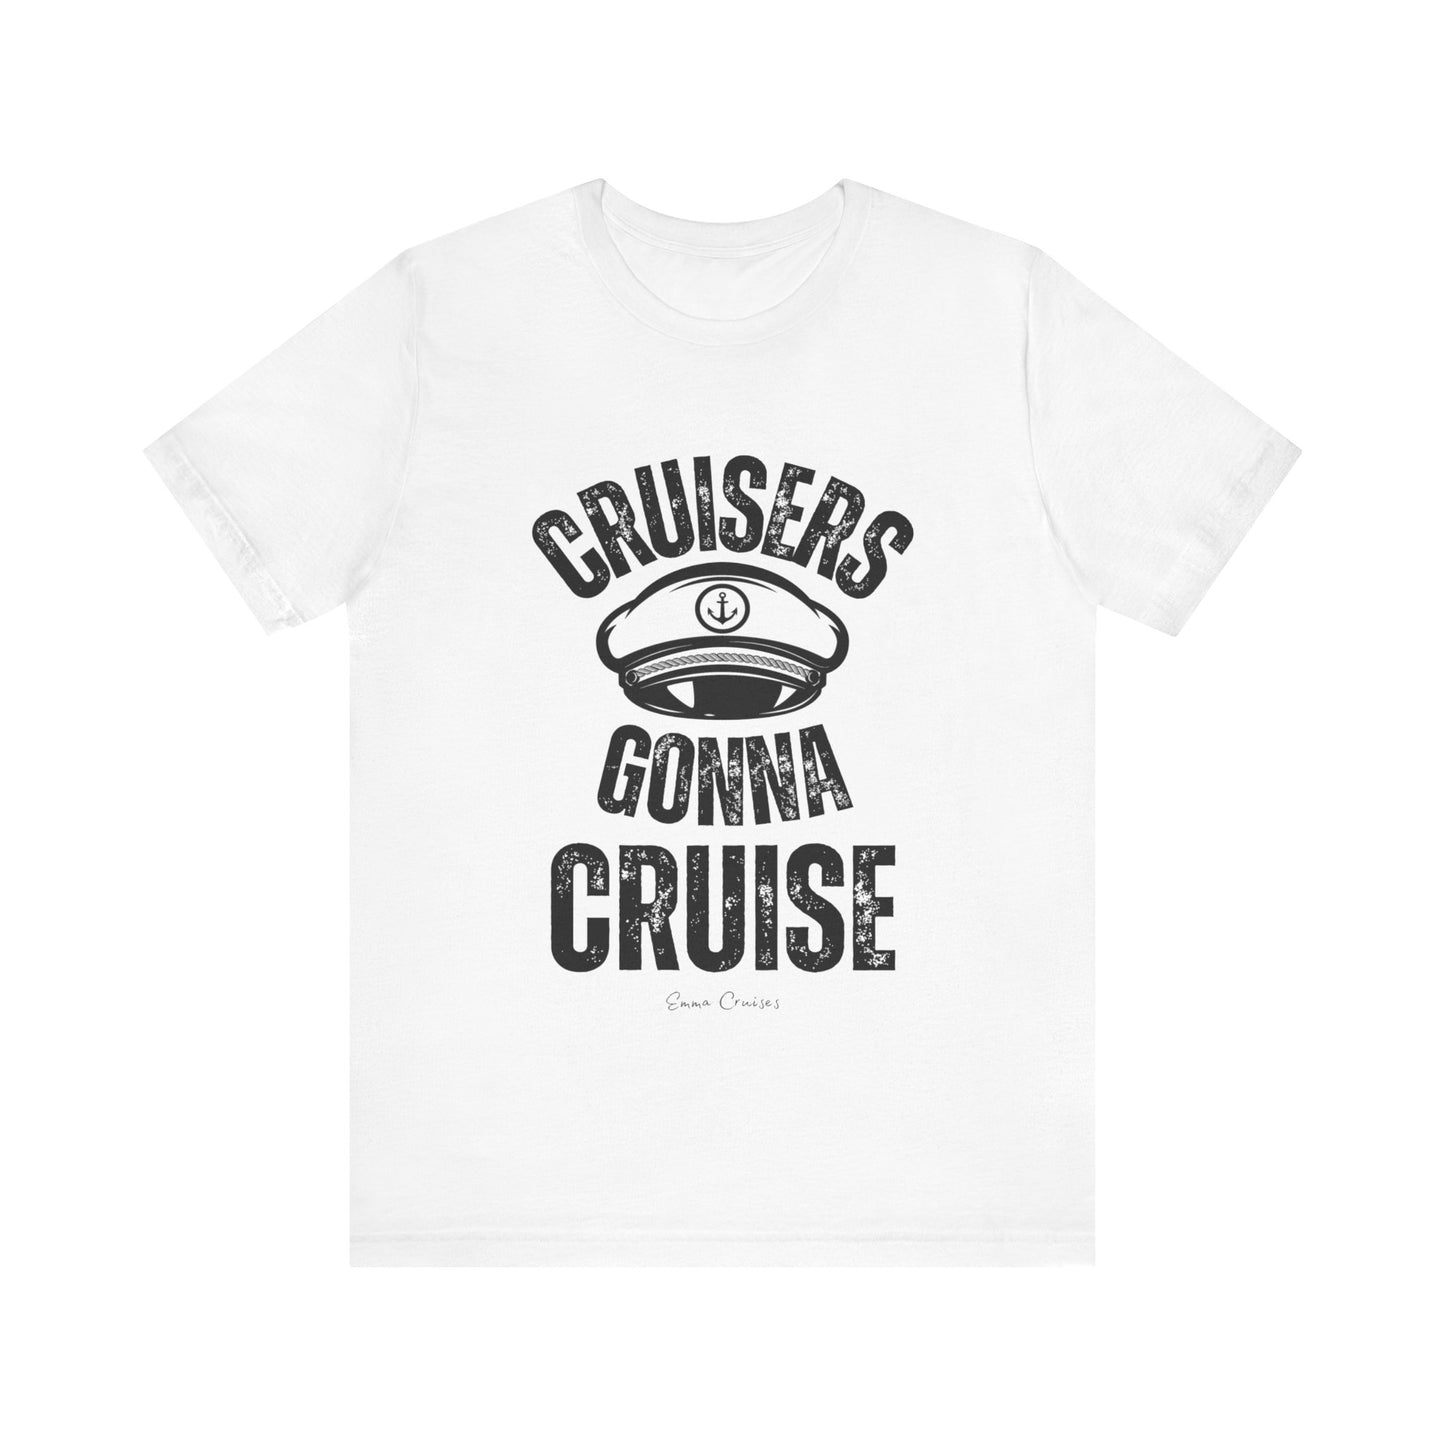 Cruisers Gonna Cruise - UNISEX T-Shirt